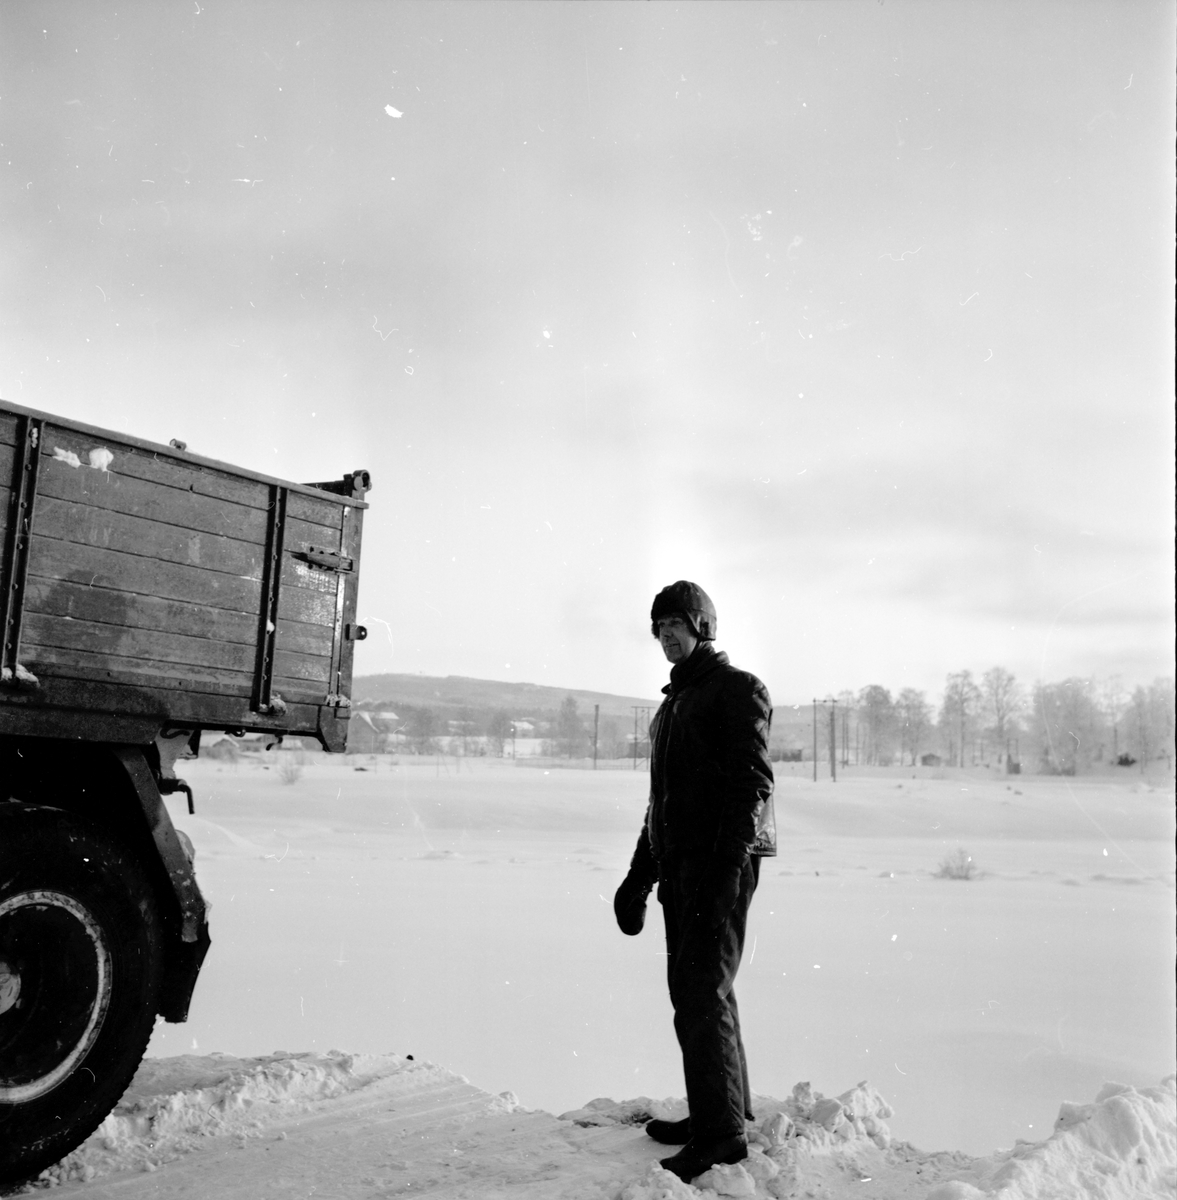 Snötippen,
5 Januari 1966